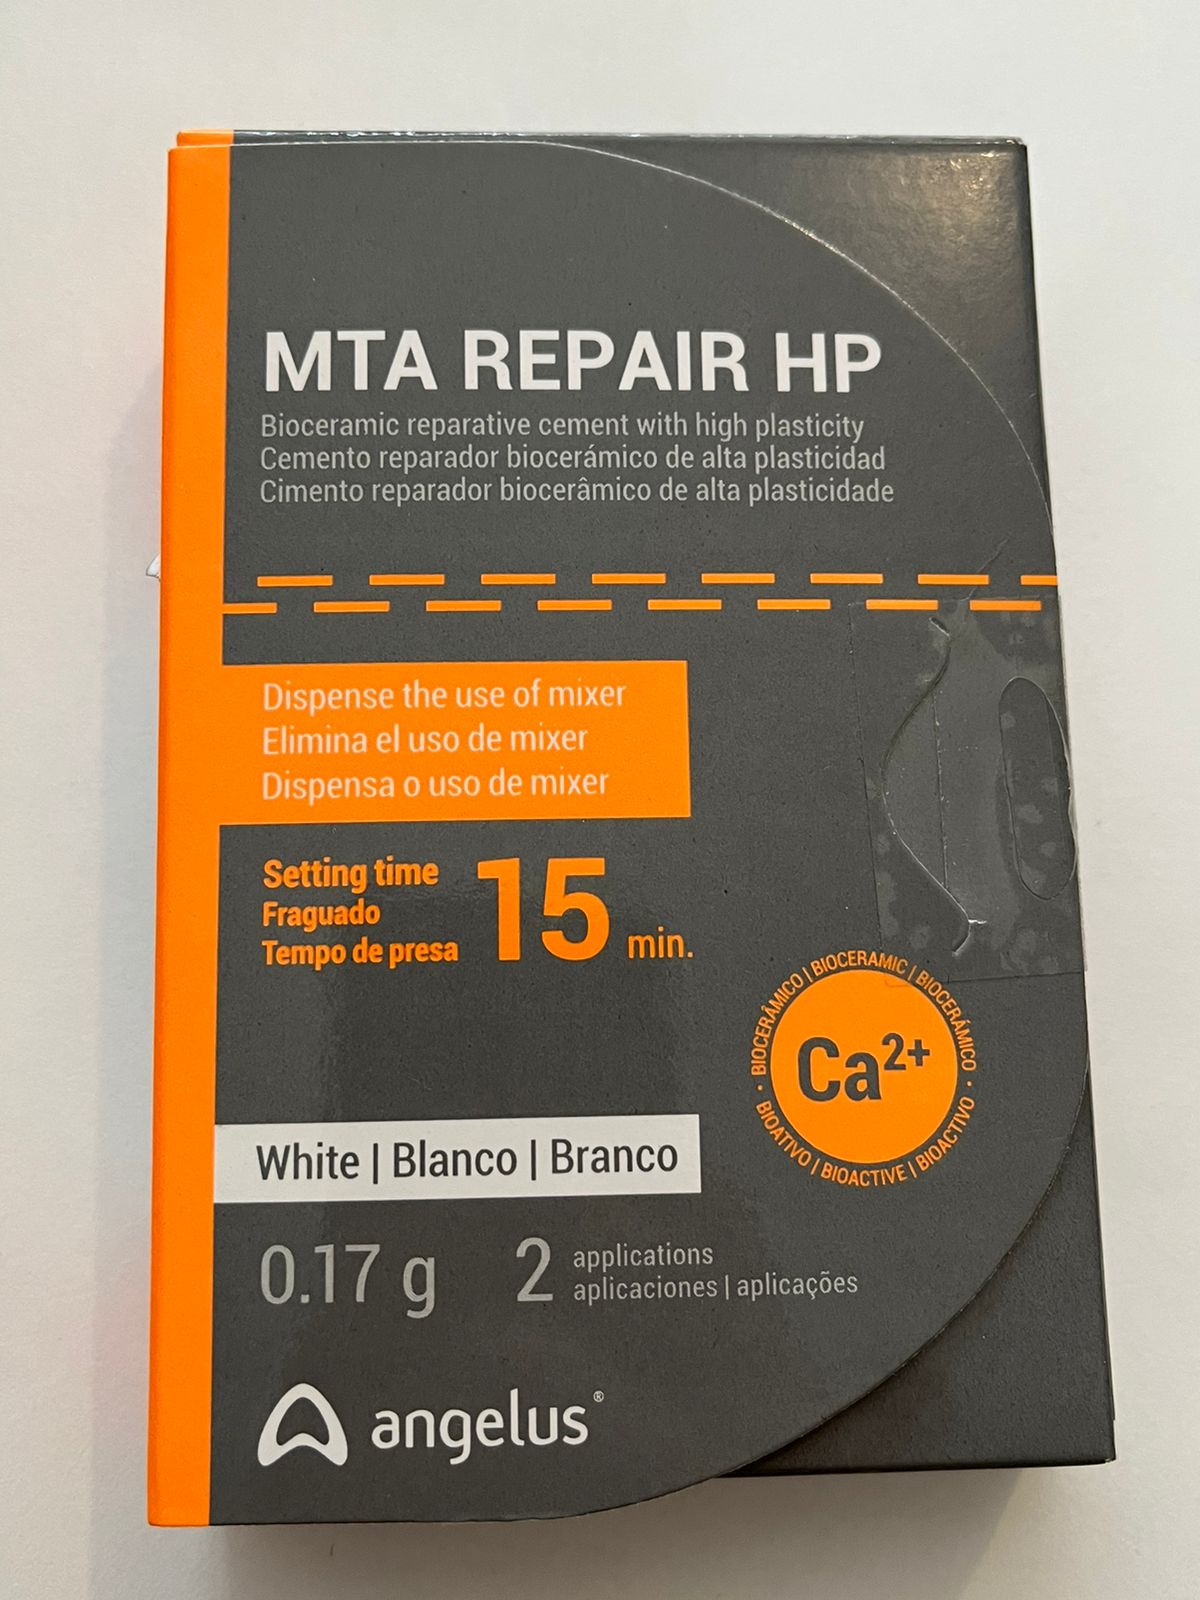 MTA  cemento reparador biocerámico de alta plasticidad 0.17g blanco 2 aplicaciones angelus